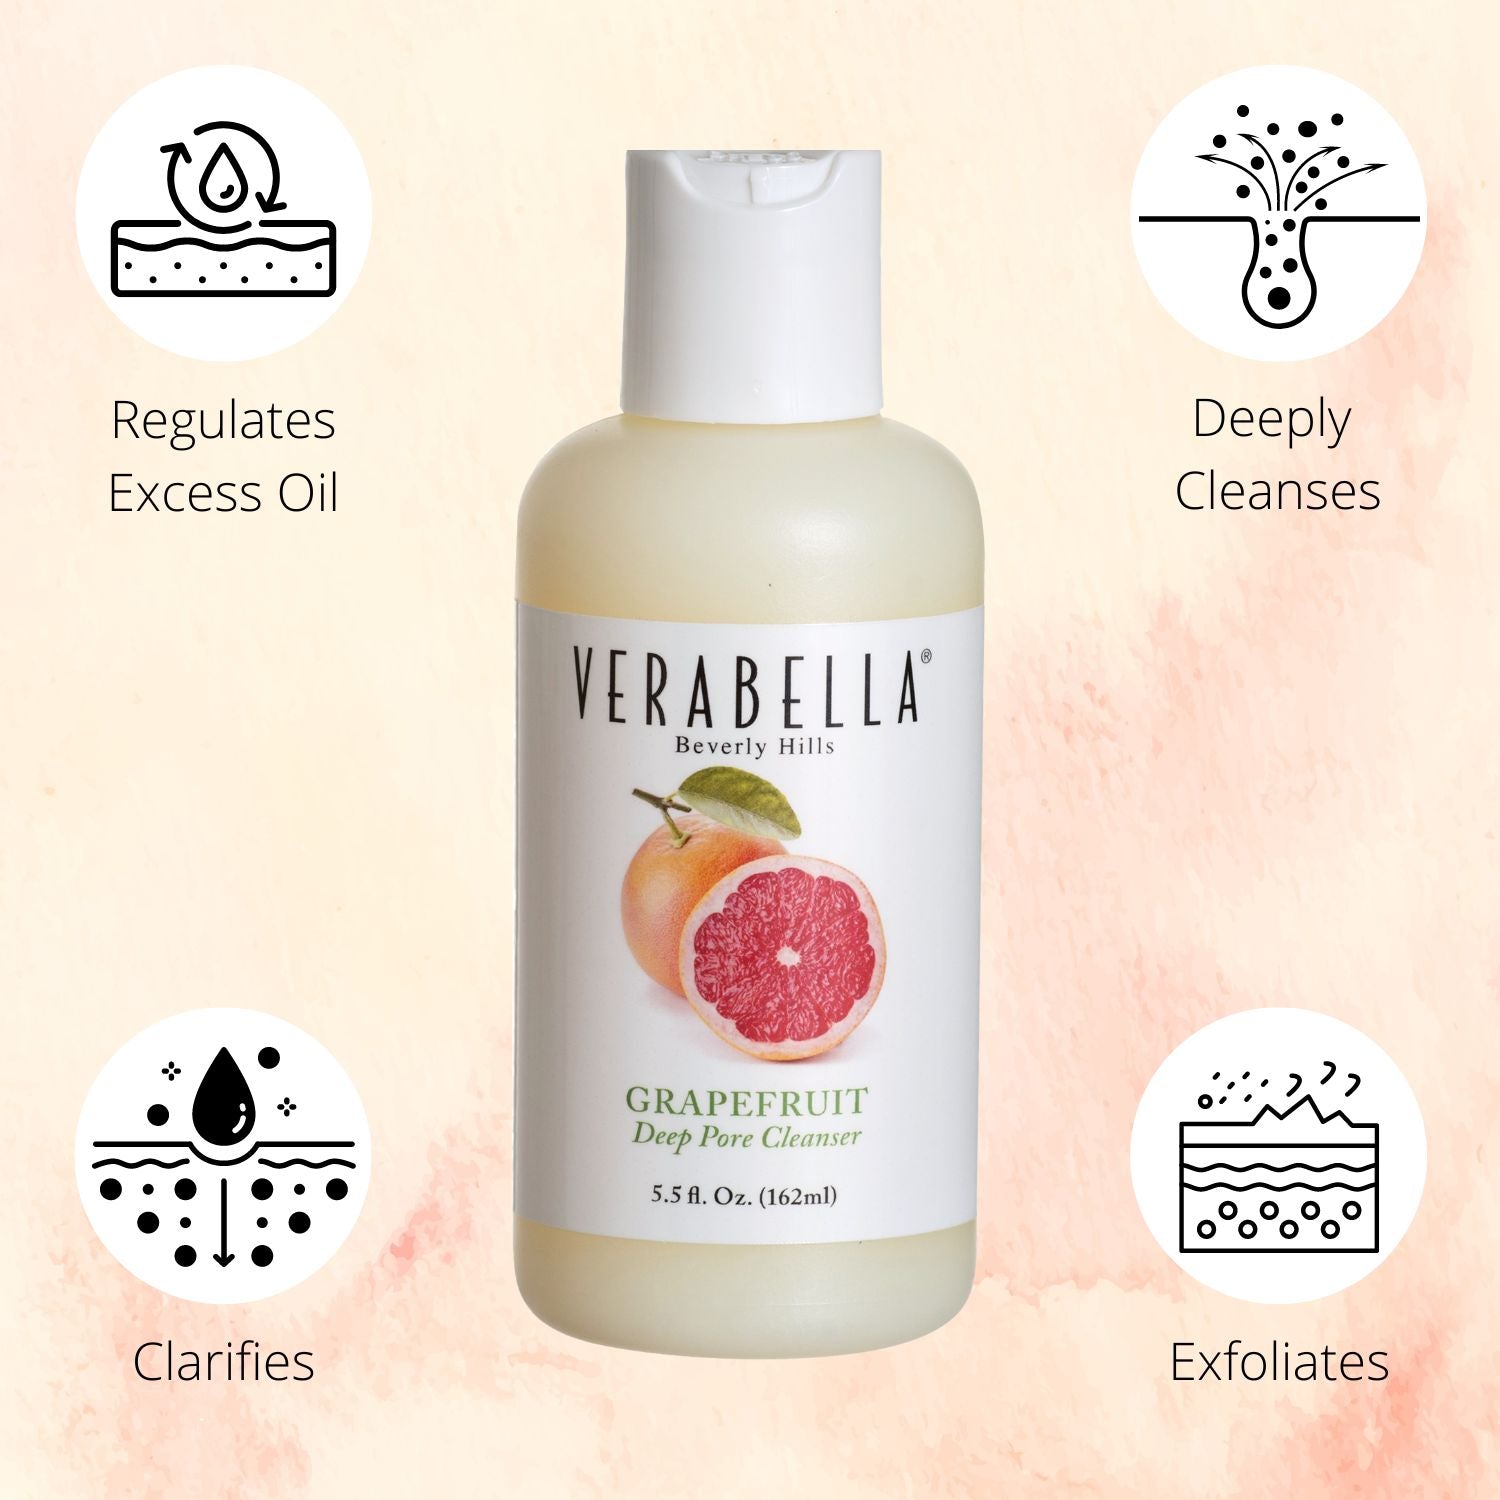 Verabella Grapefruit Deep Pore Cleanser regulates excess oil, exfoliates, and clarifies